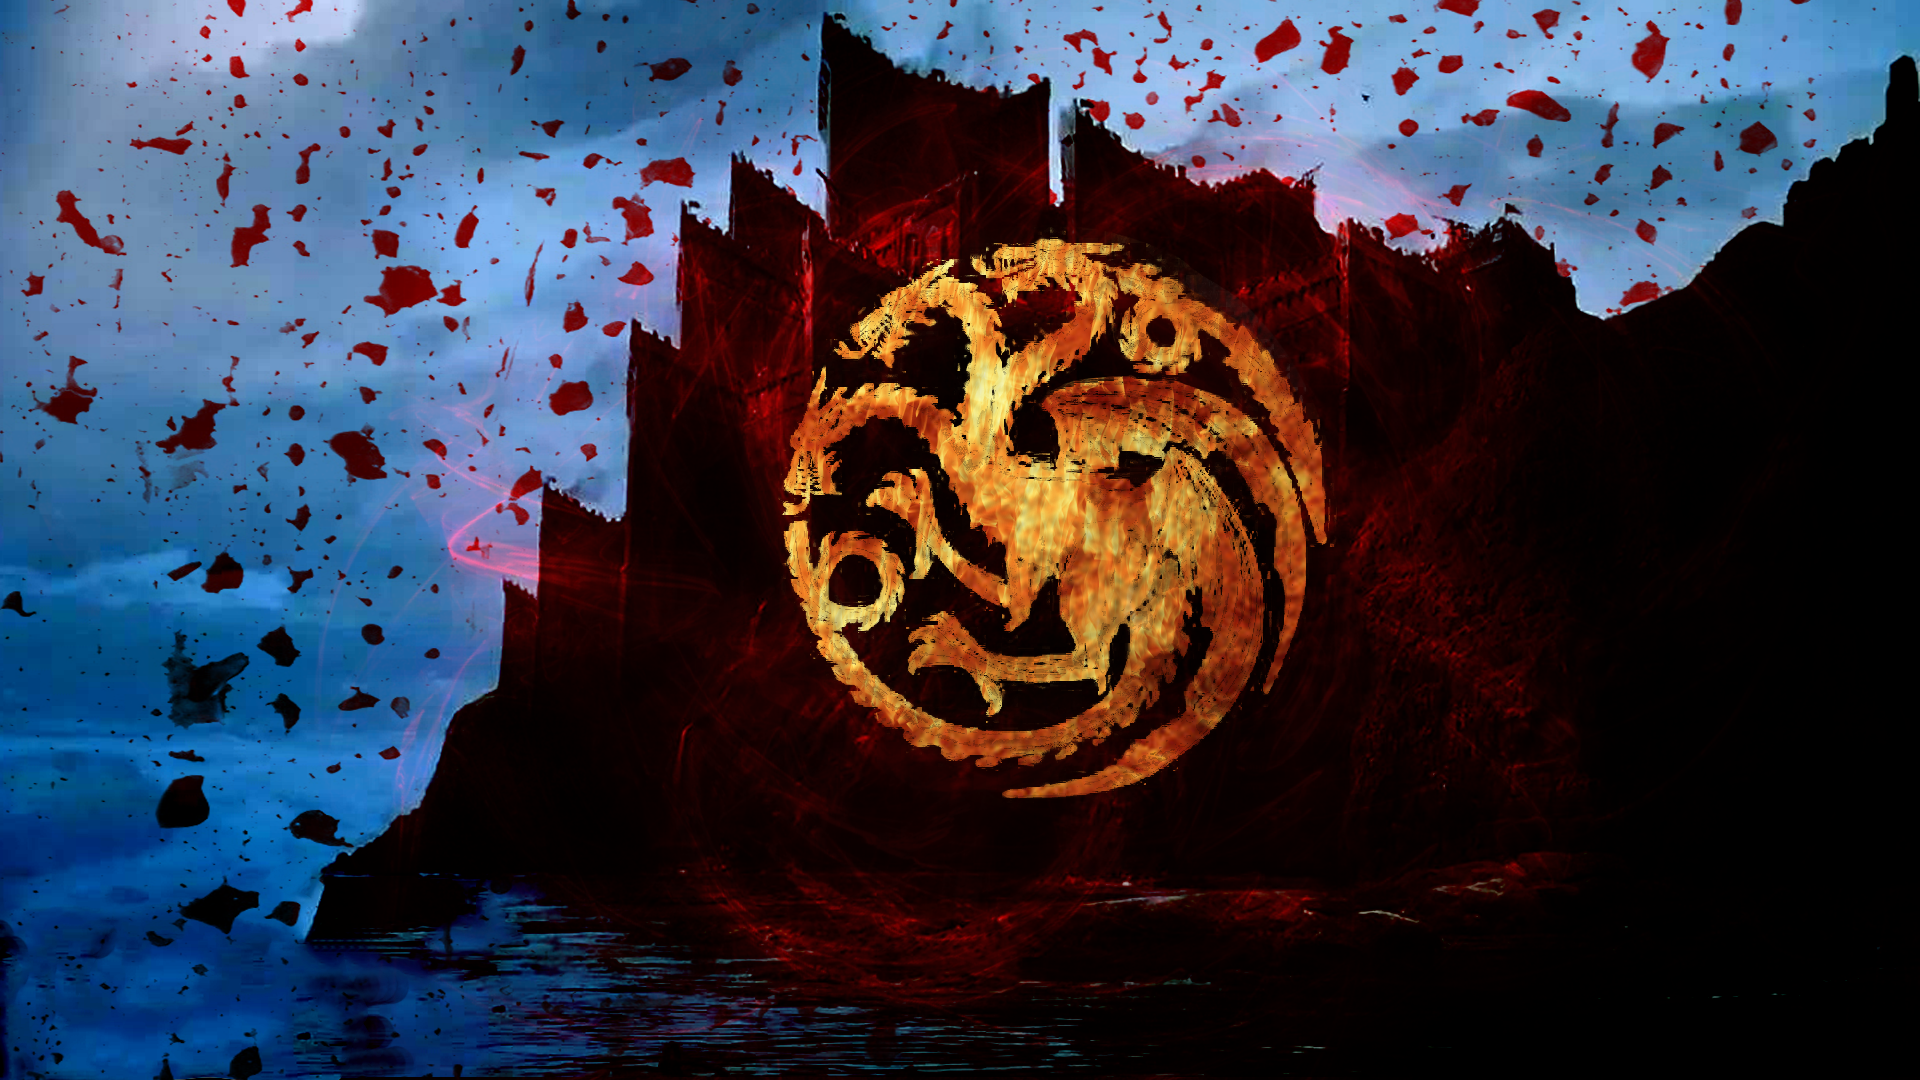 Game of Thrones House Targaryen Wallpaper by Velostodon on